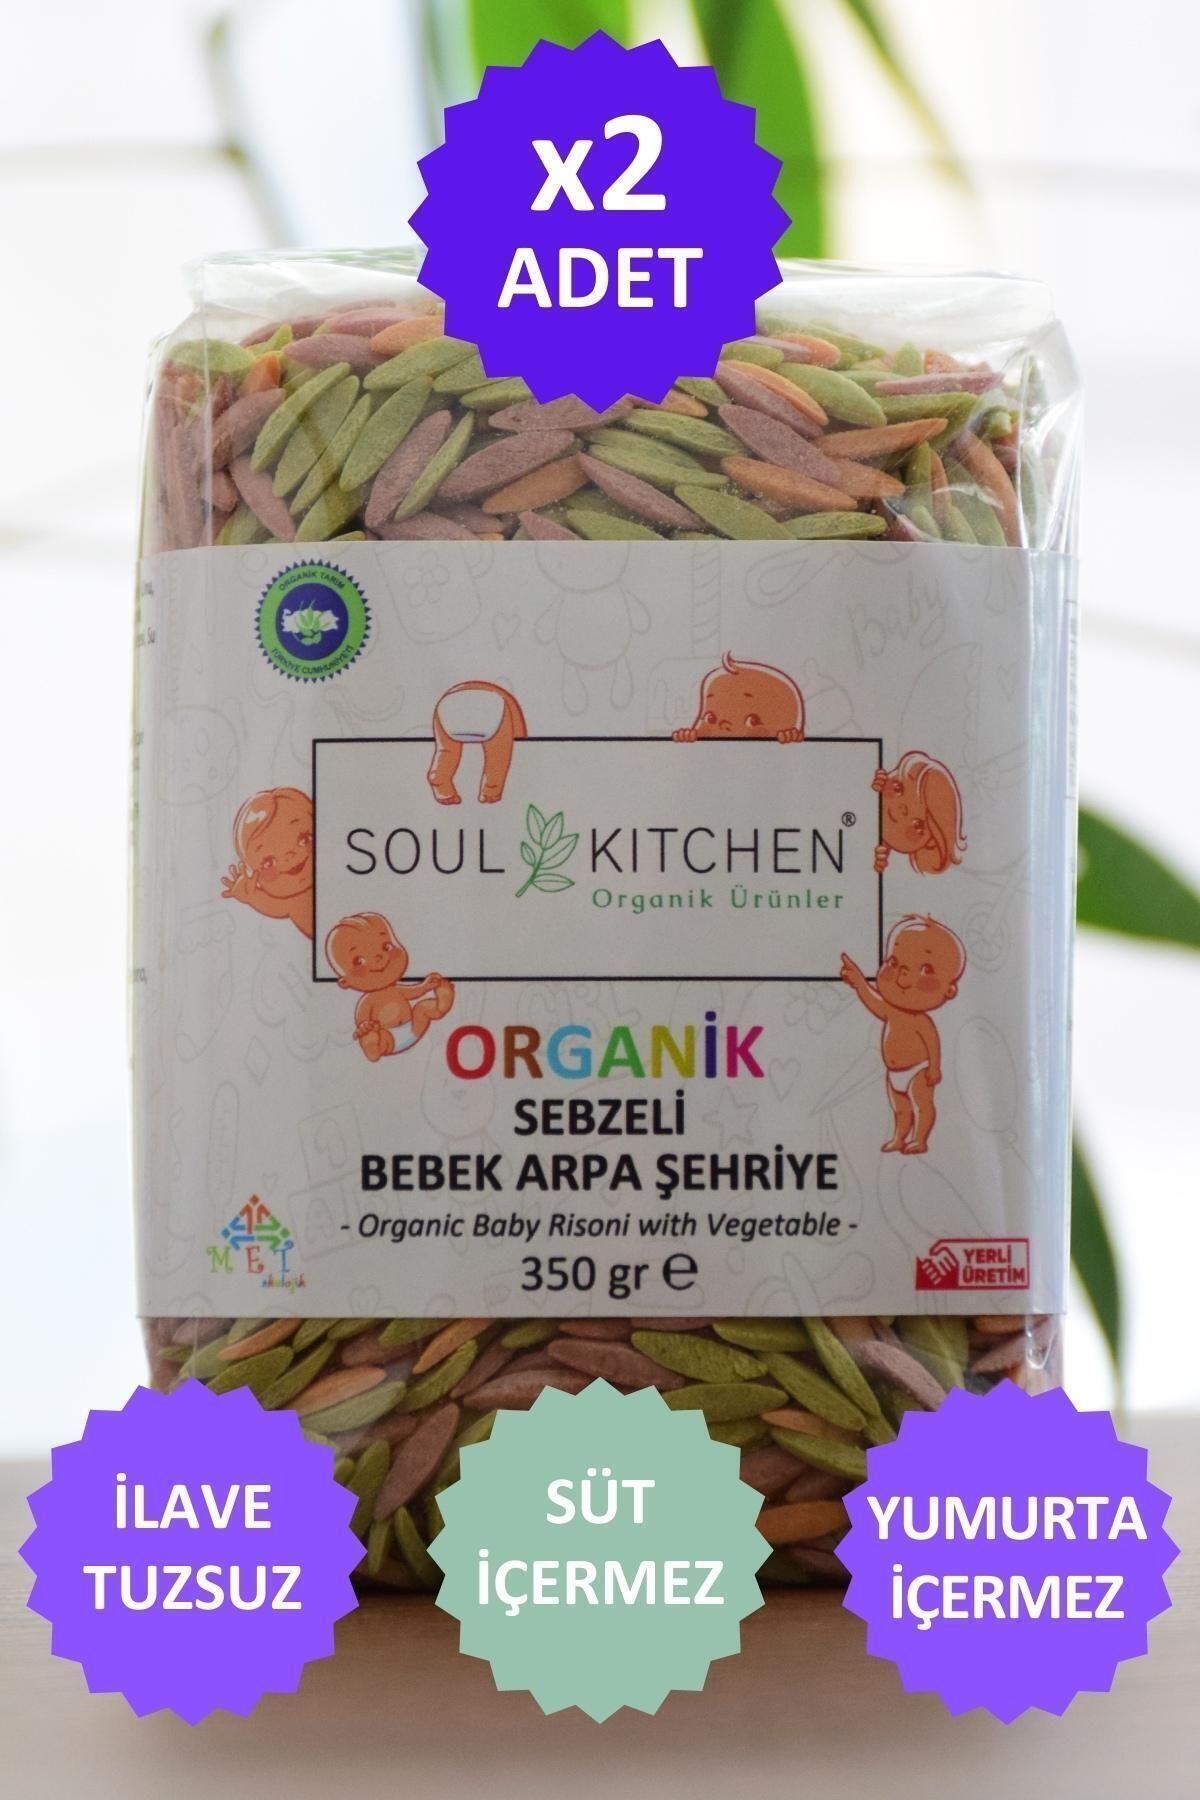 Soul Kitchen Organik Ürünler Organik Sebzeli Bebek Arpa Şehriye 350gr (TUZSUZ) (VEGAN) - 2'li Avantaj Set -